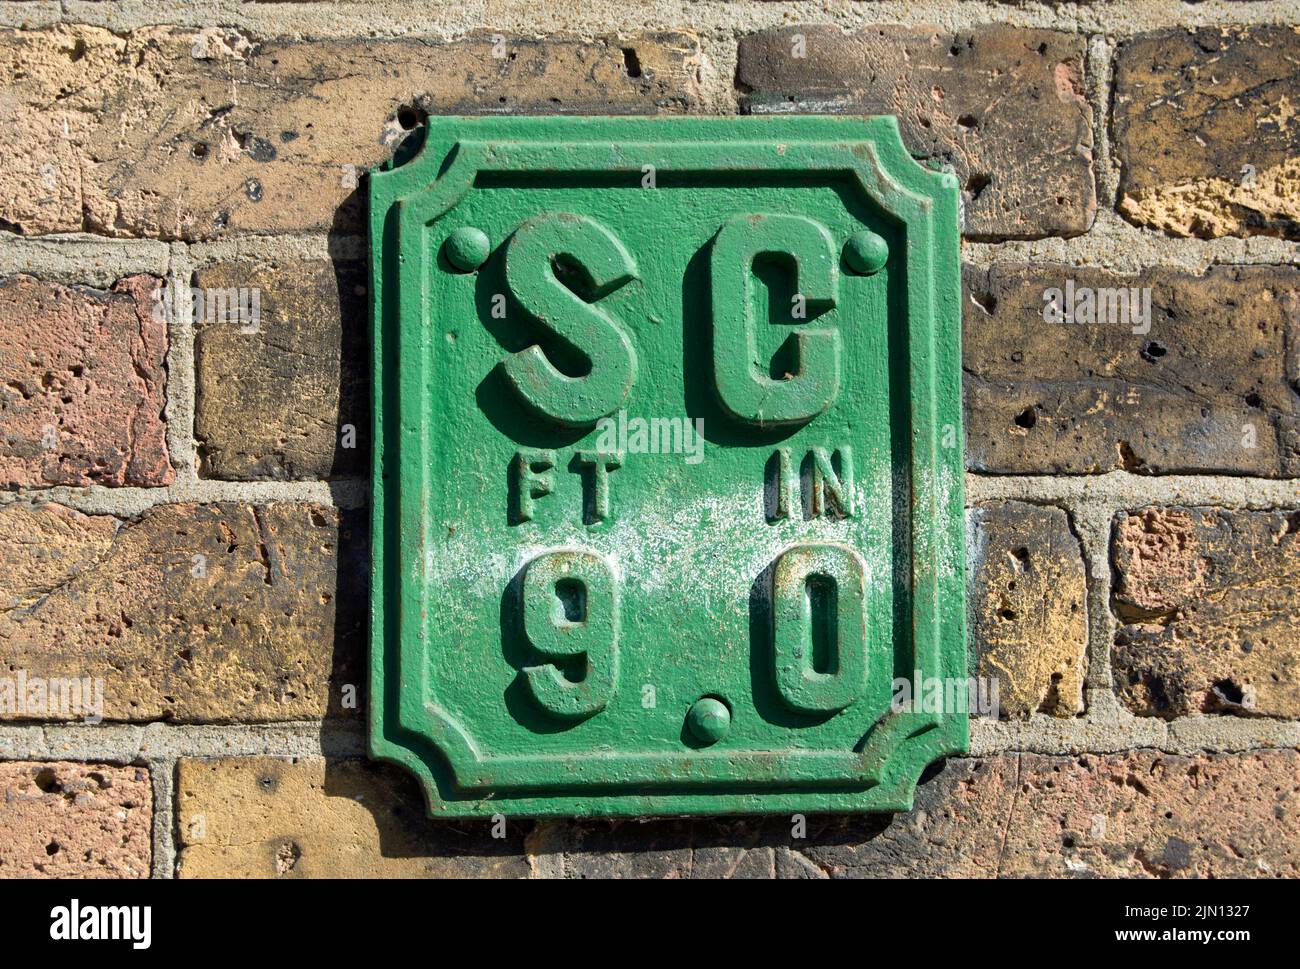 britisches Wandschild, das den Standort eines Absperrhahns zur Kontrolle des Leitungswassers in einem Abstand von 9 Fuß in brentford, london, england anzeigt Stockfoto